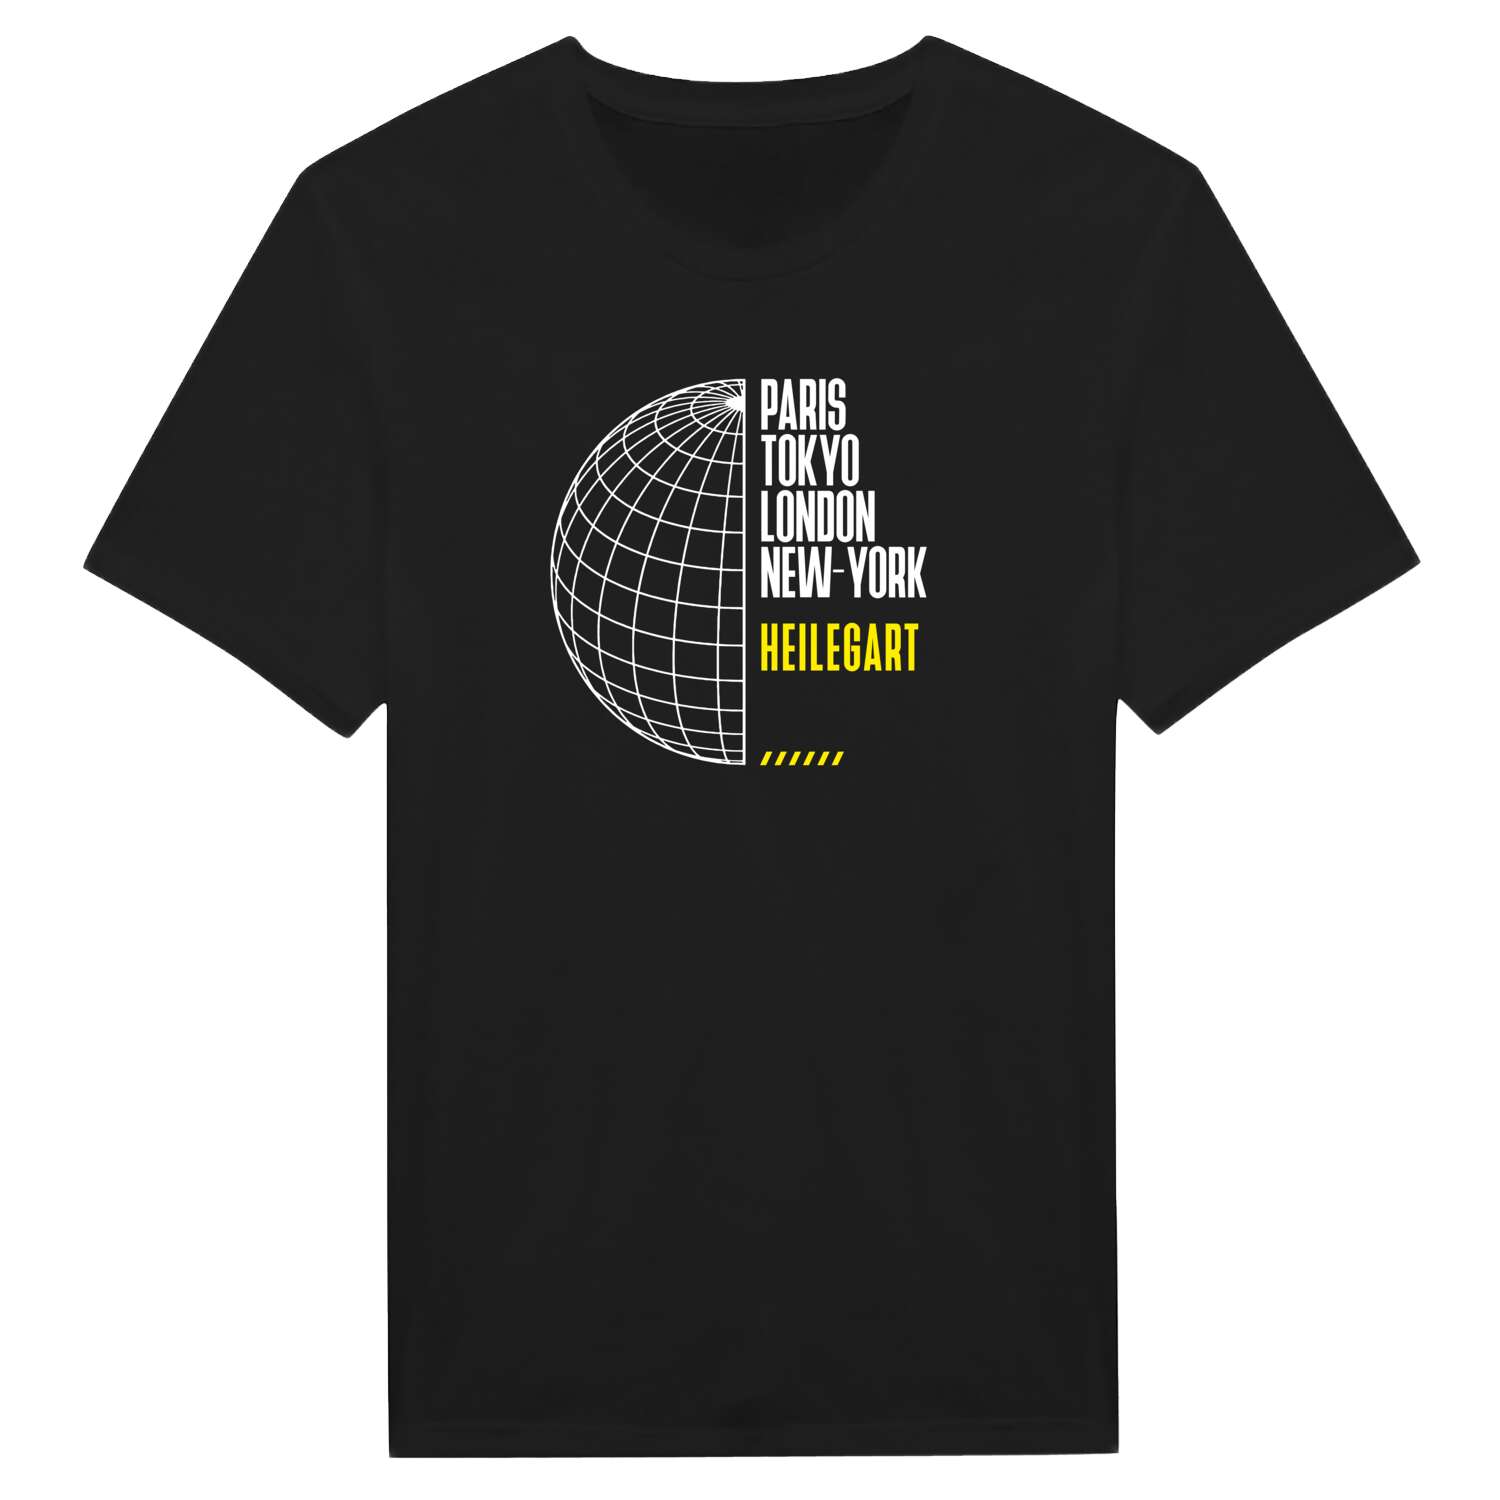 Heilegart T-Shirt »Paris Tokyo London«